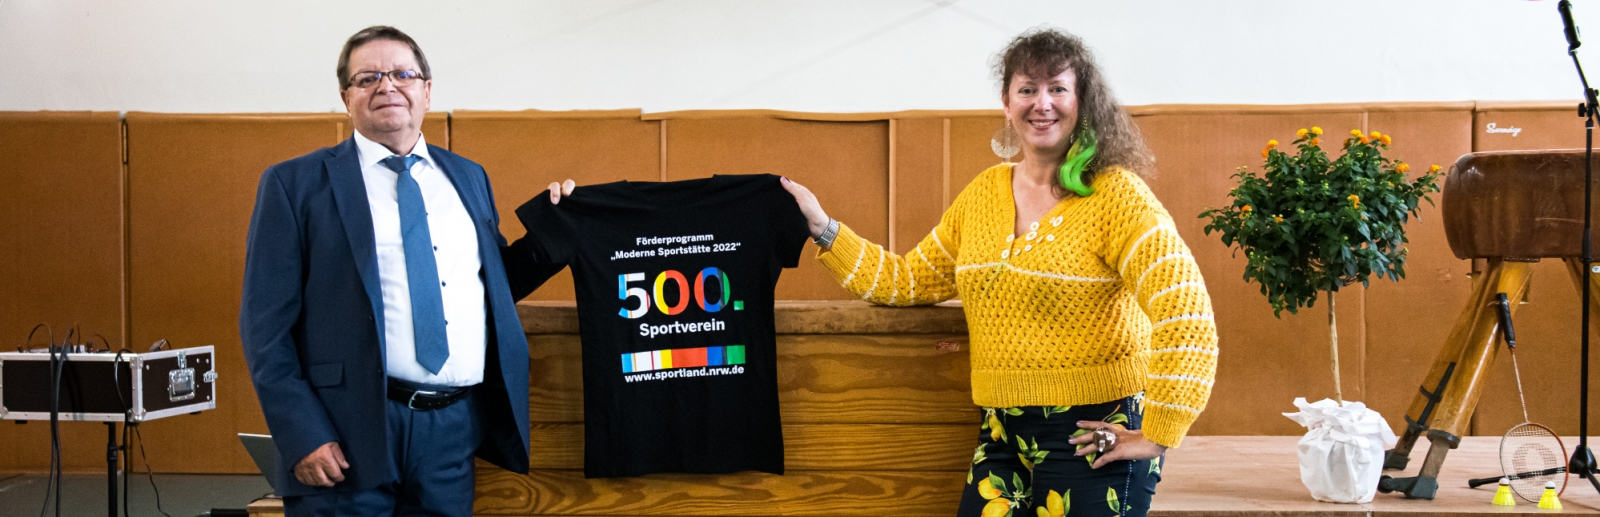 Staatssekretärin Milz hält ein schwarzes T-Shirt mit Logo der Förderung mit der Zahl 500 in Regenbogenfarben.